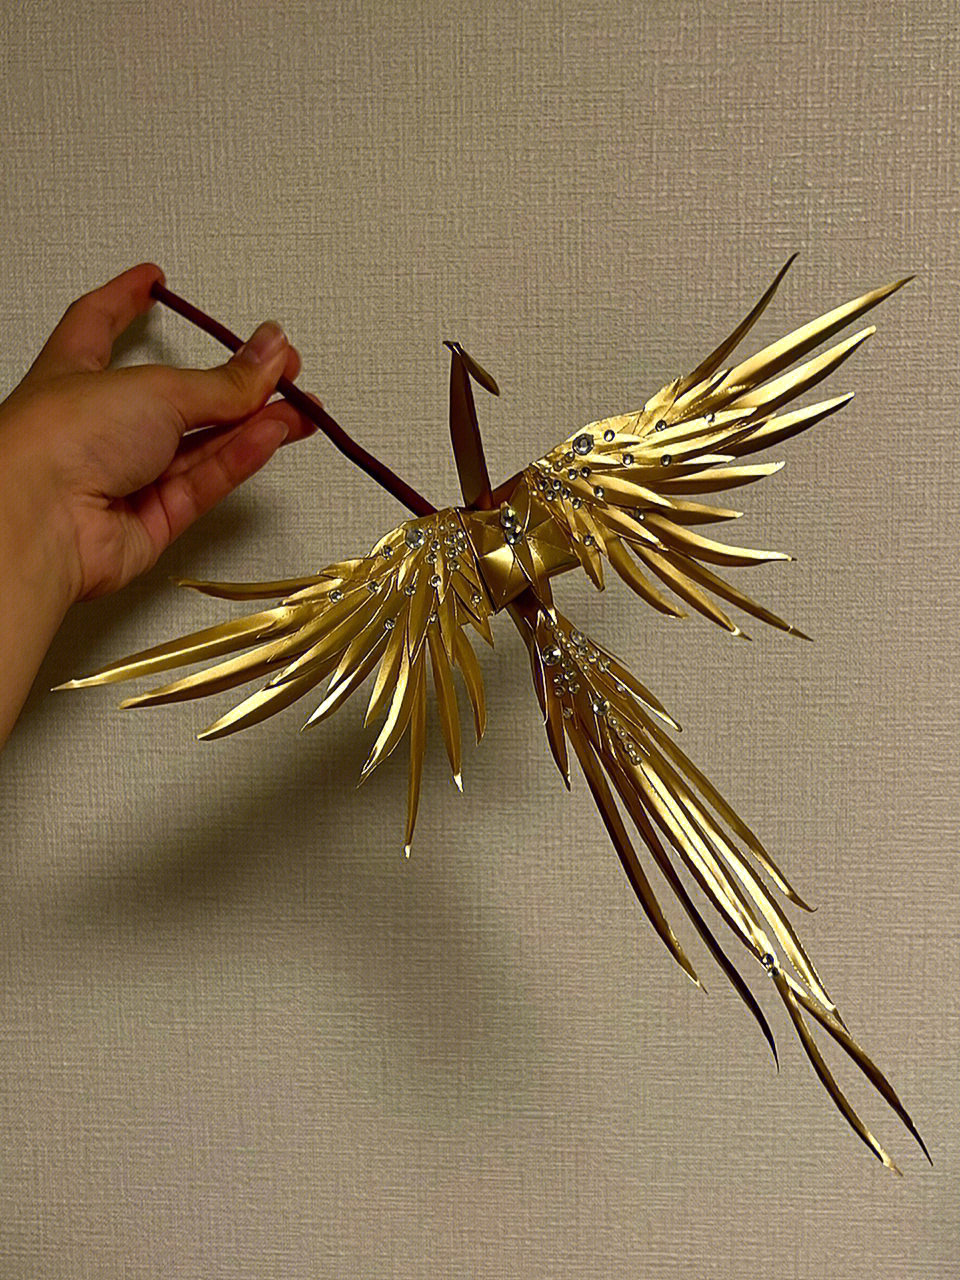 凤凰千纸鹤的折法图片